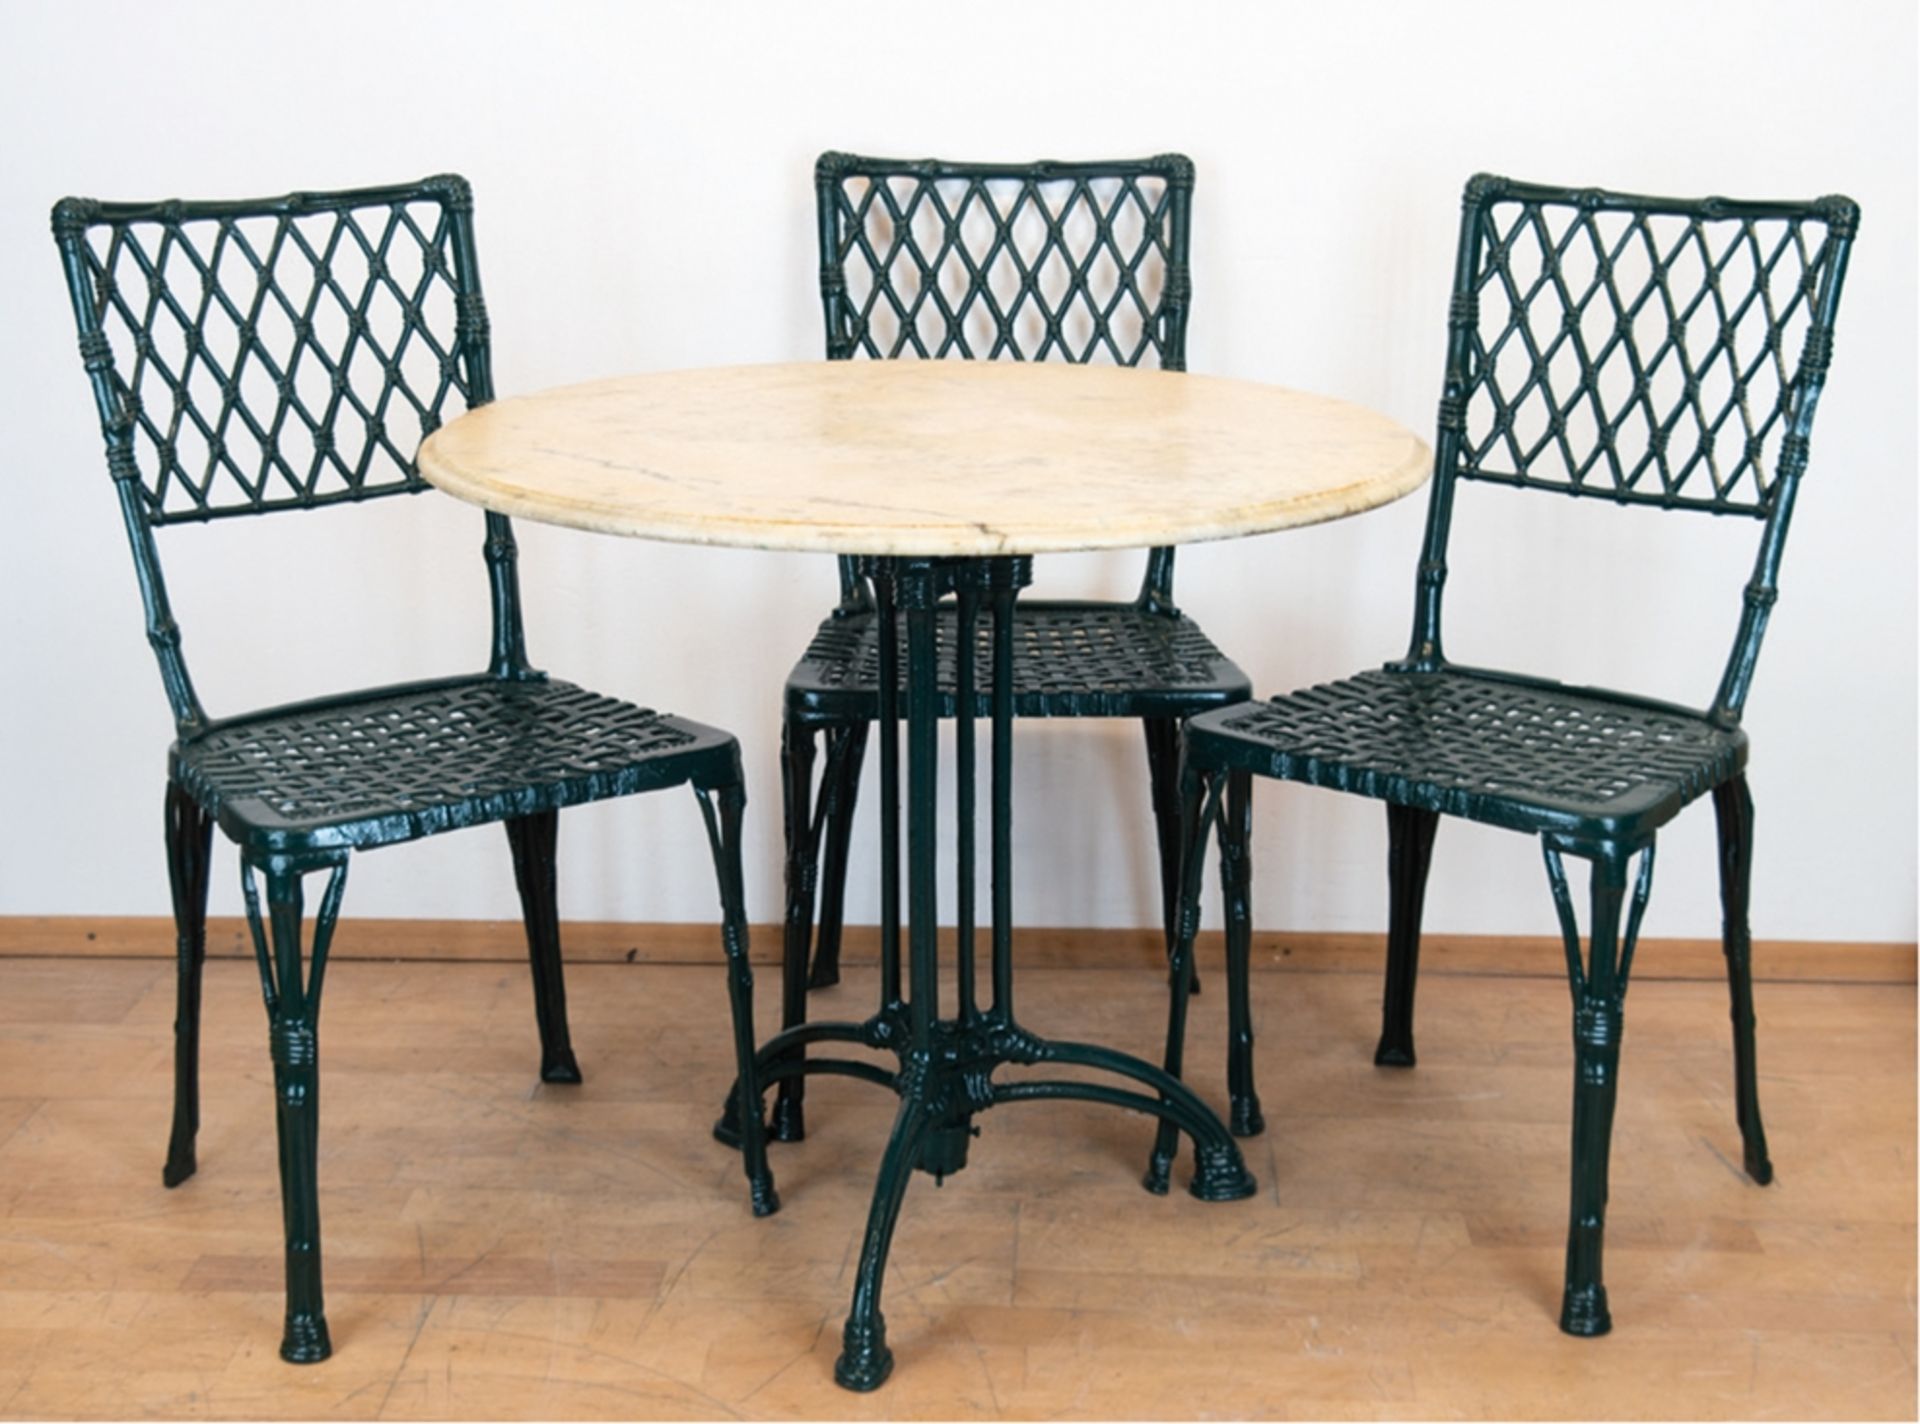 Gartentisch mit 3 Stühlen, runder Tisch mit Marmorplatte, Stühle Aluminium, grün gefasst, Sitze in